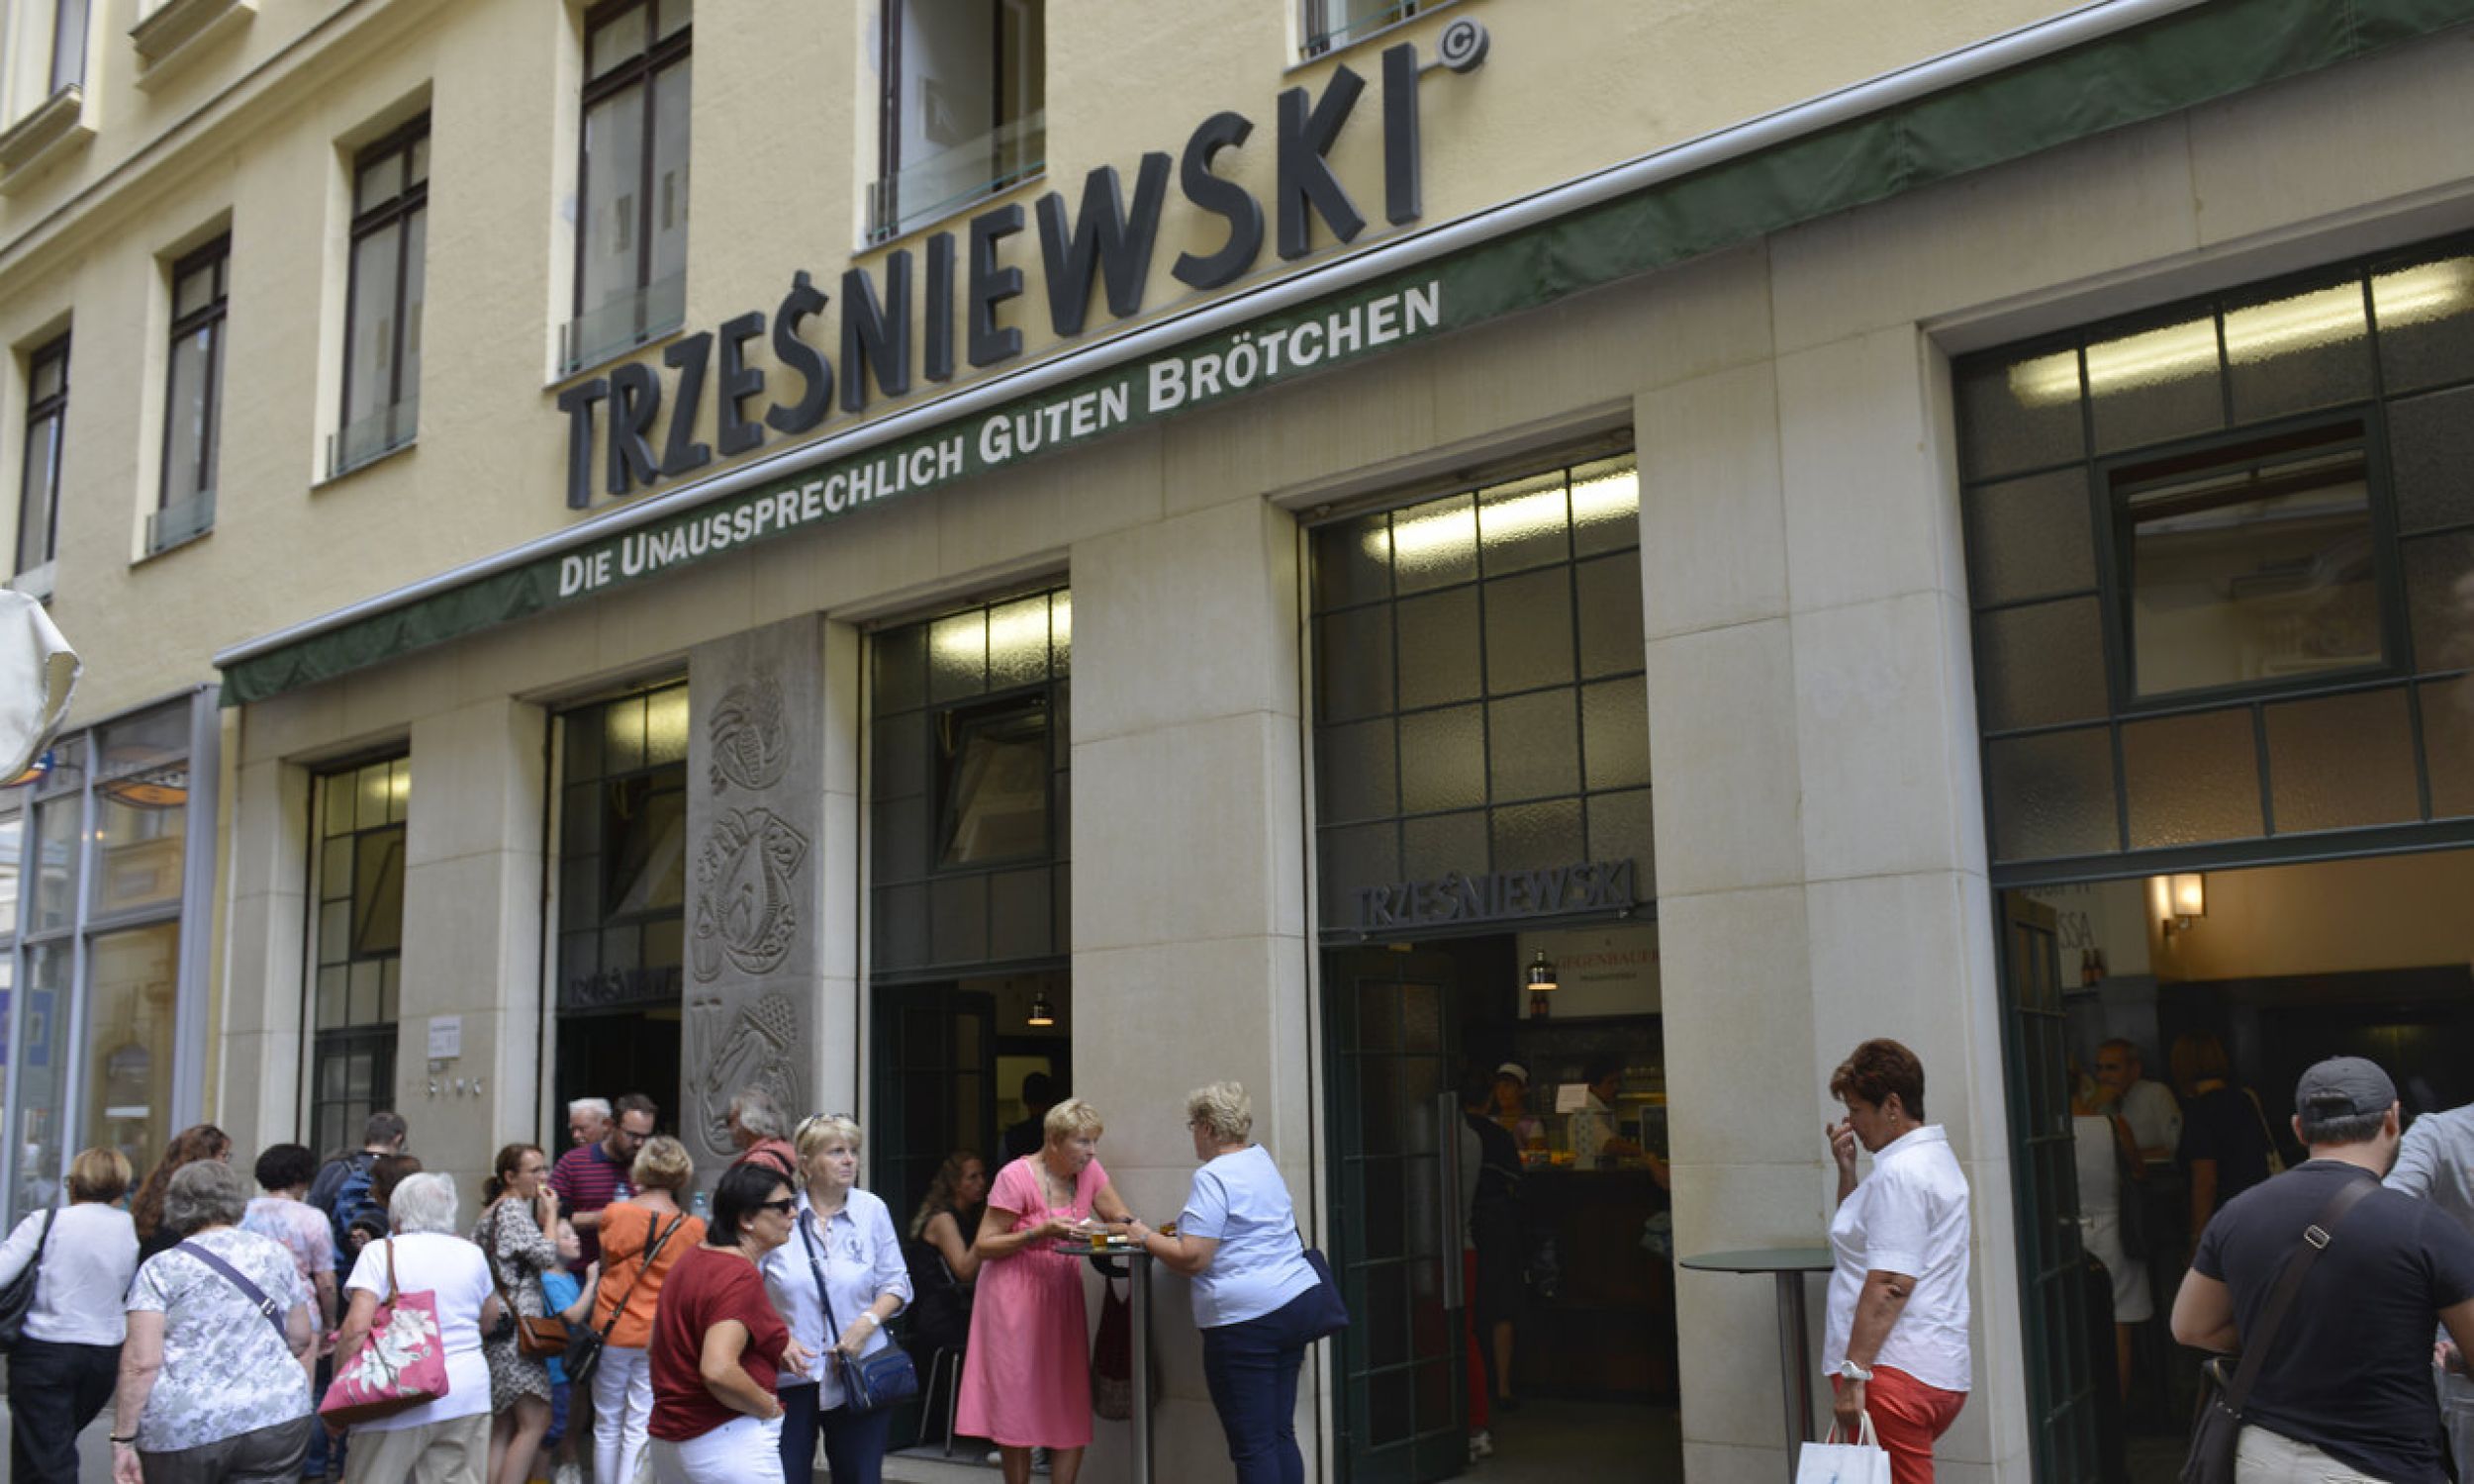 Motto firmy nad wejściem: „Die unaussprechlich guten Brötchen” – niewymownie dobre kanapki. Określenie „niewymownie” odnosi się do nazwiska Trześniewskiego, które Austriakom trudno wymówić. Fot. Schöning/ullstein bild via Getty Images